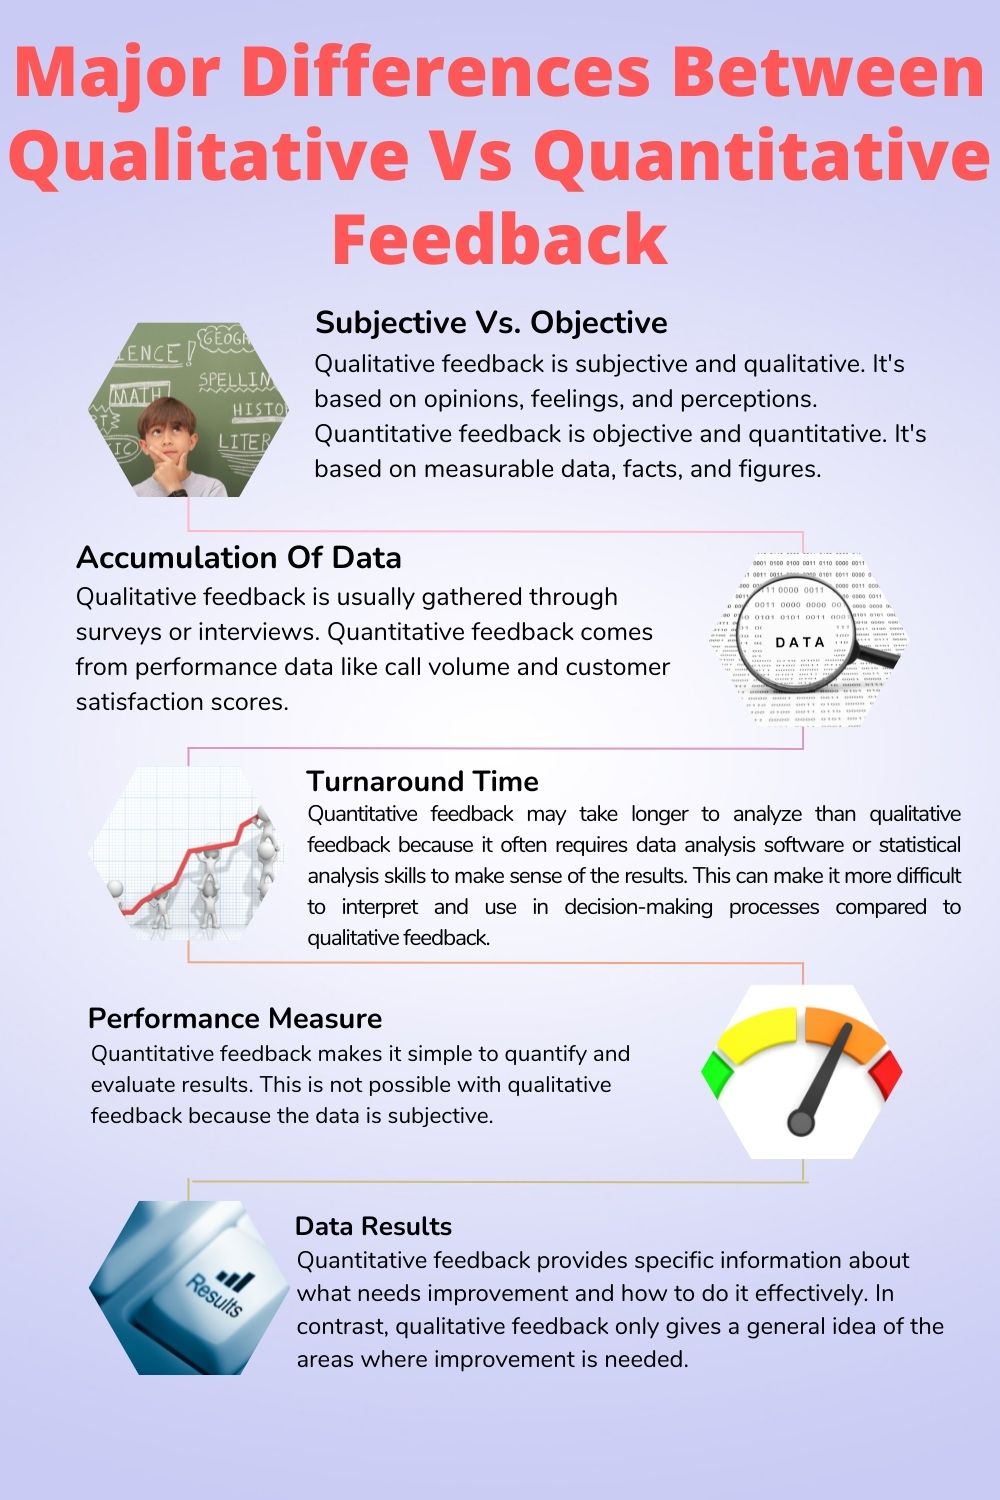 Major Differences Between Qualitative Vs Quantitative Feedback